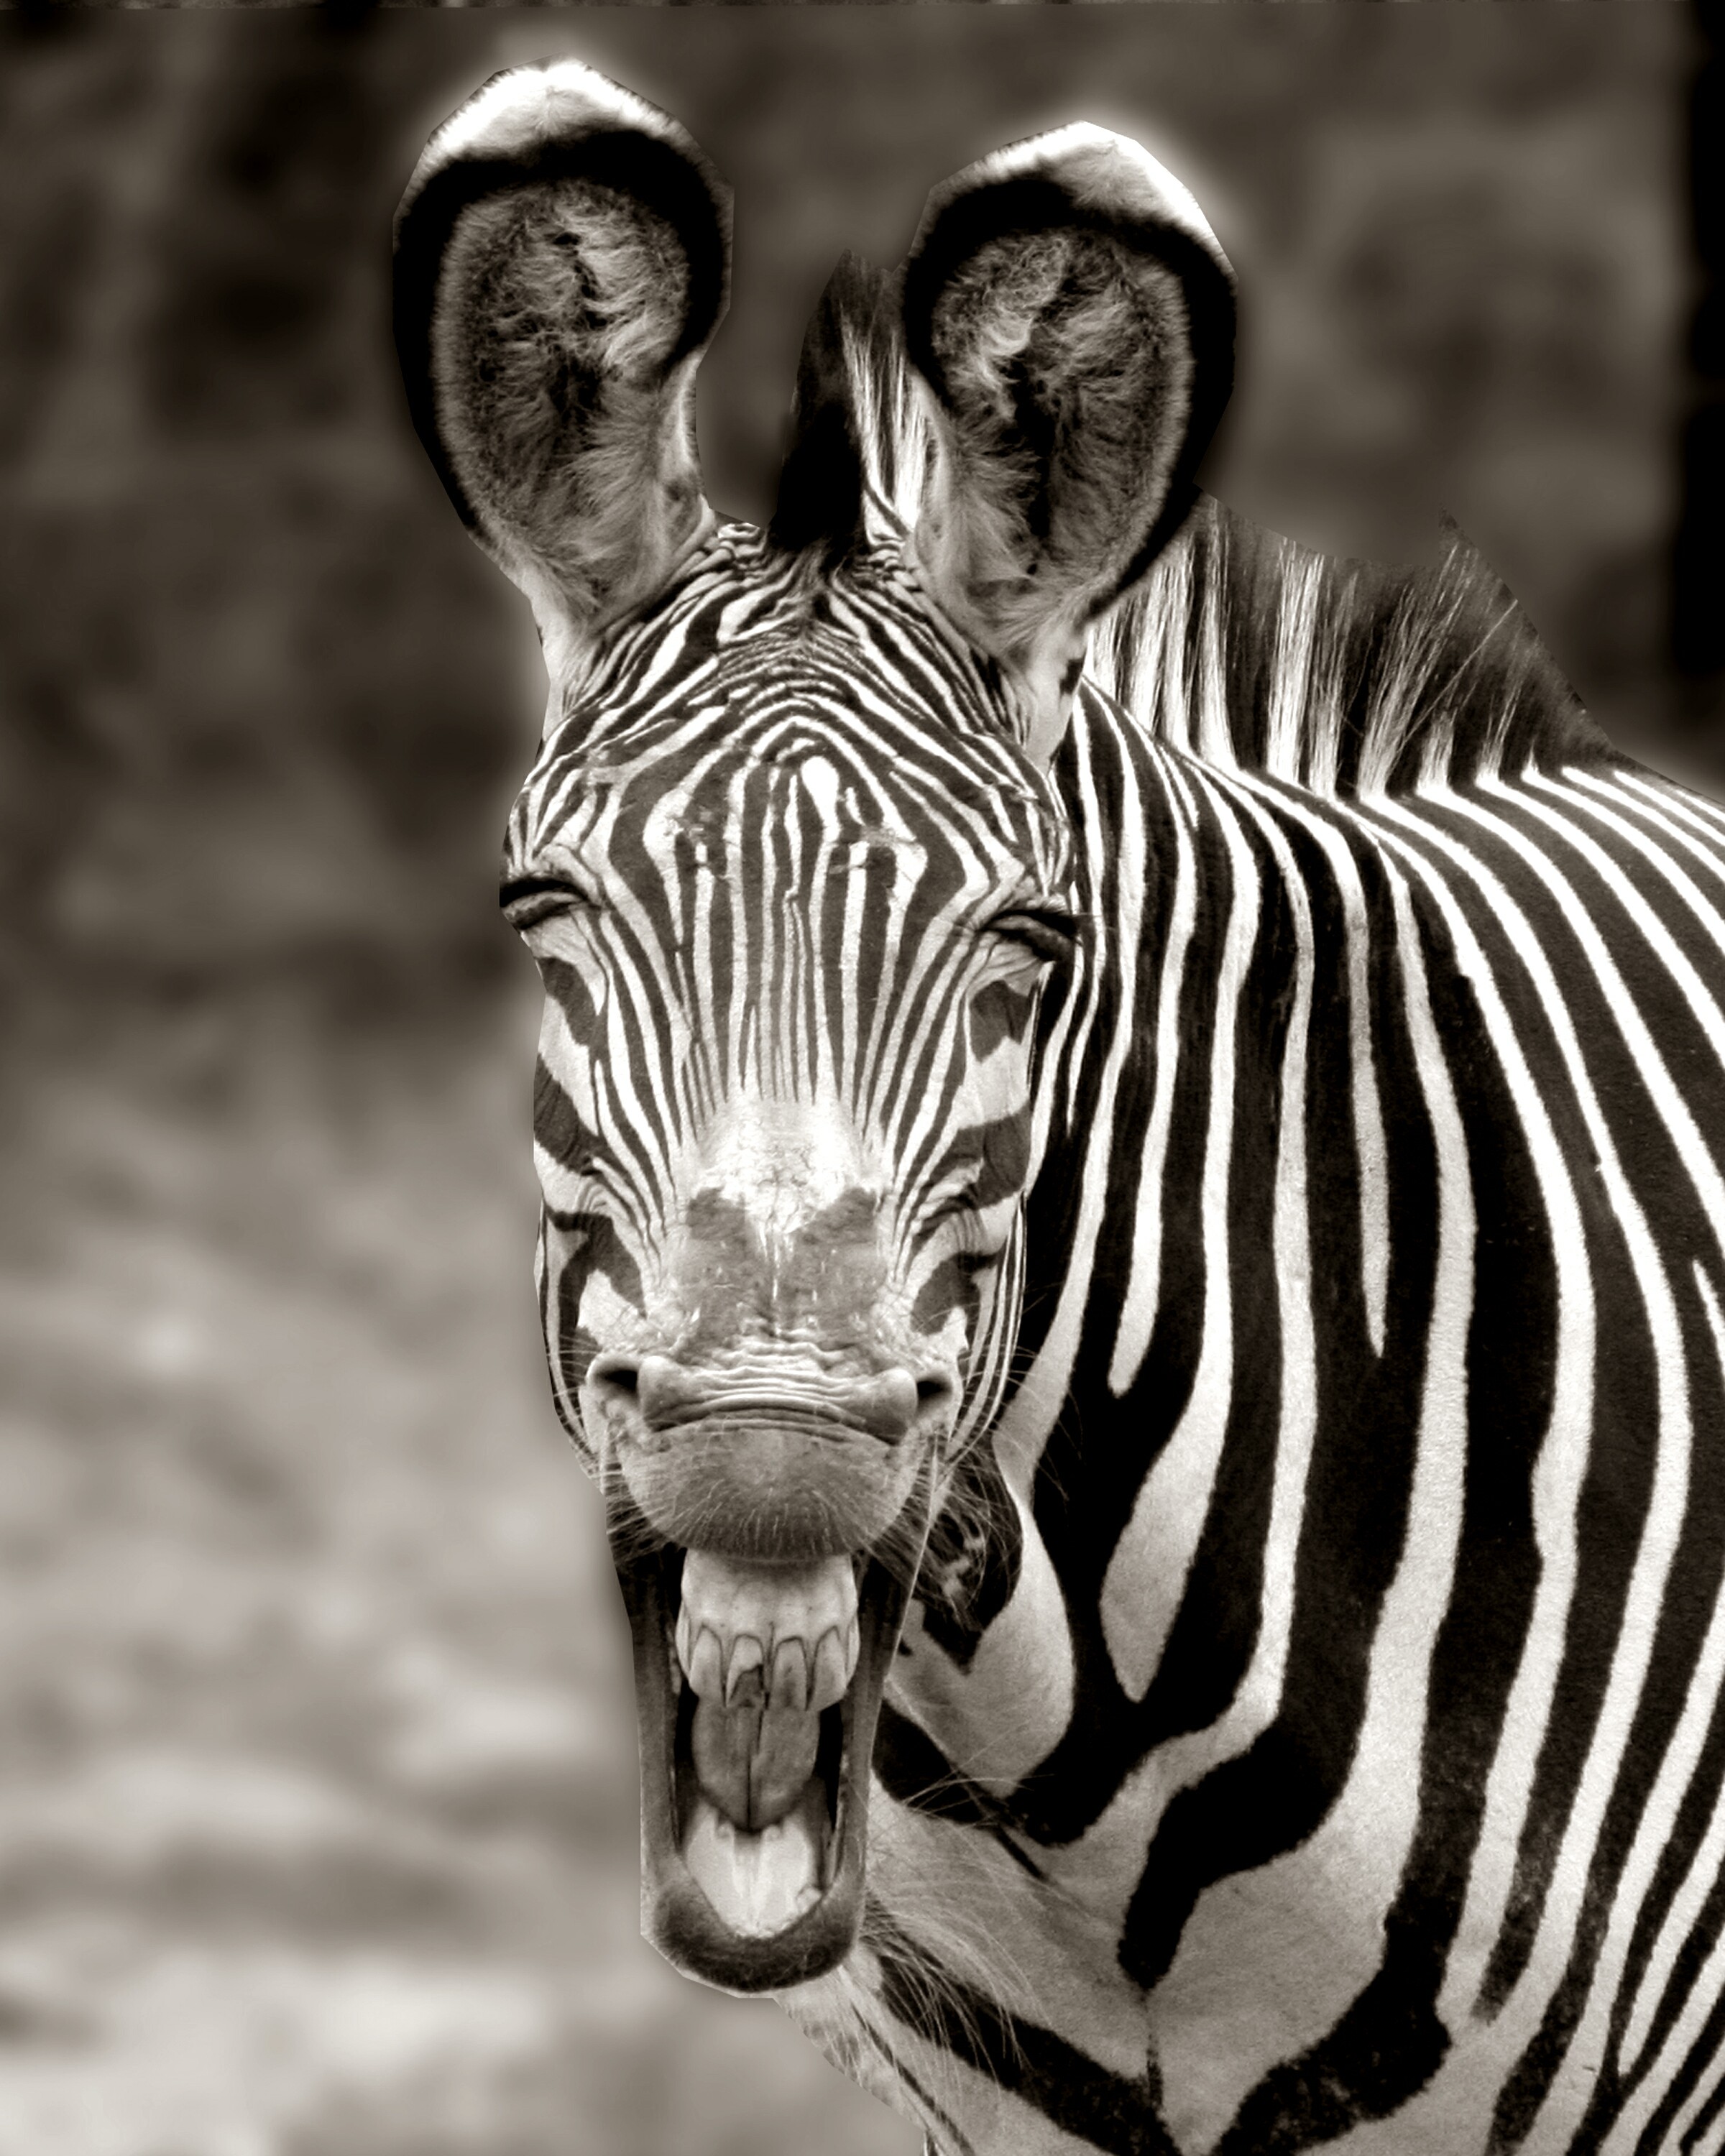 Zebra Face02-b&w.jpg